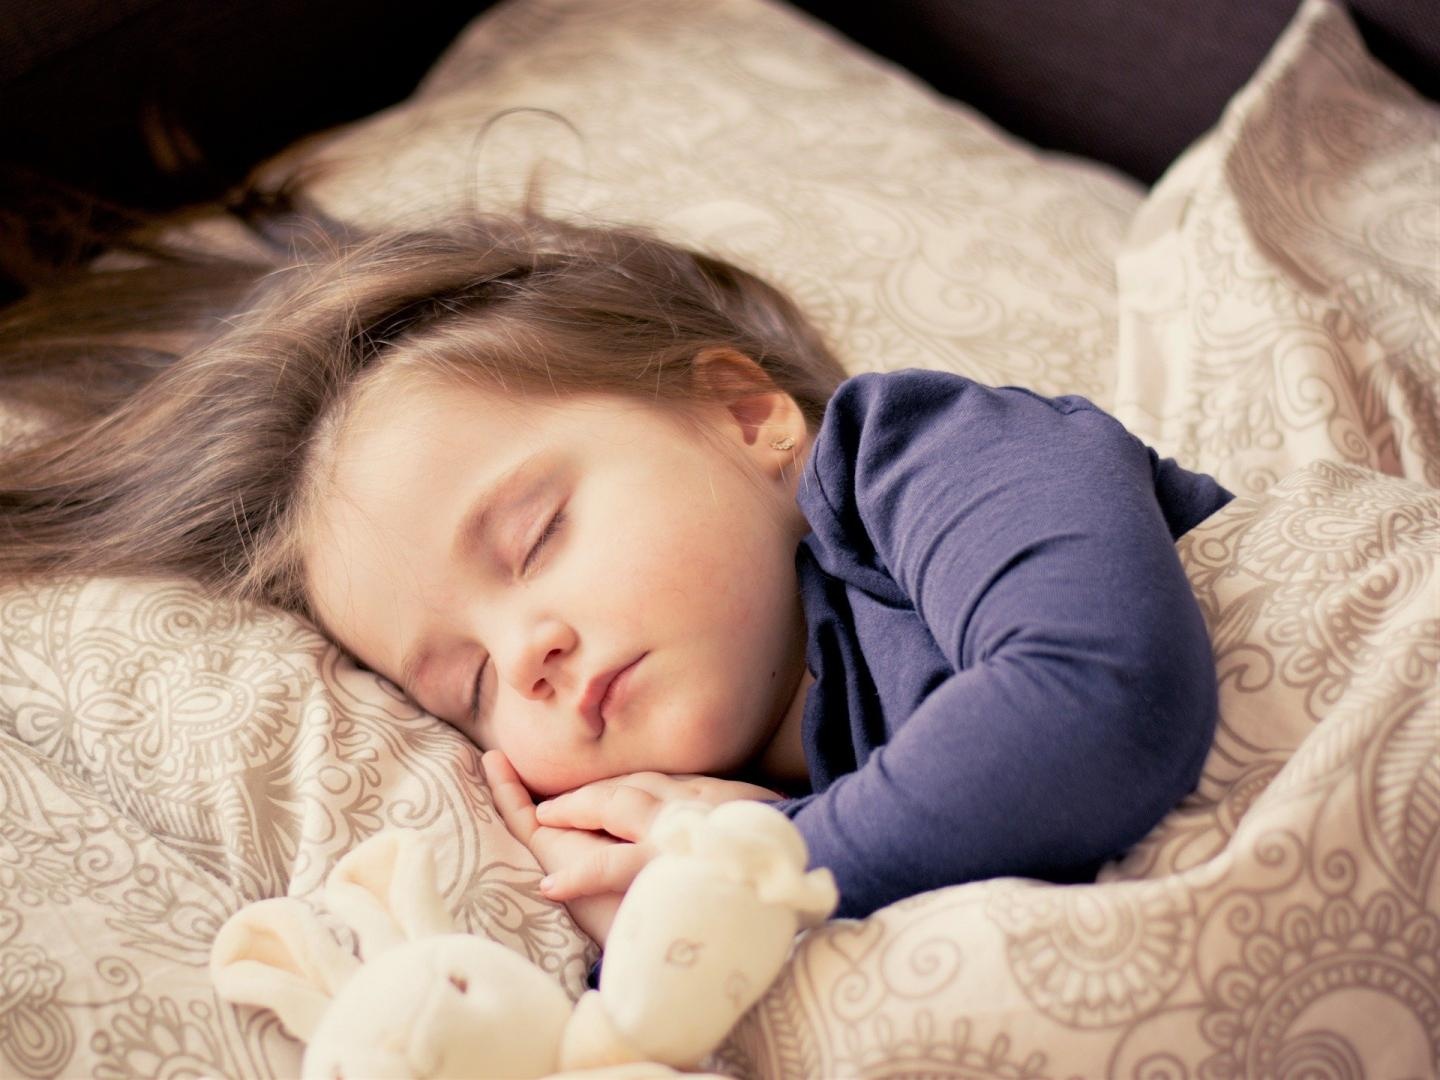 همه چیز در مورد نویز سفید یا صدای سفید و تاثیر آن روی خواب کودکان